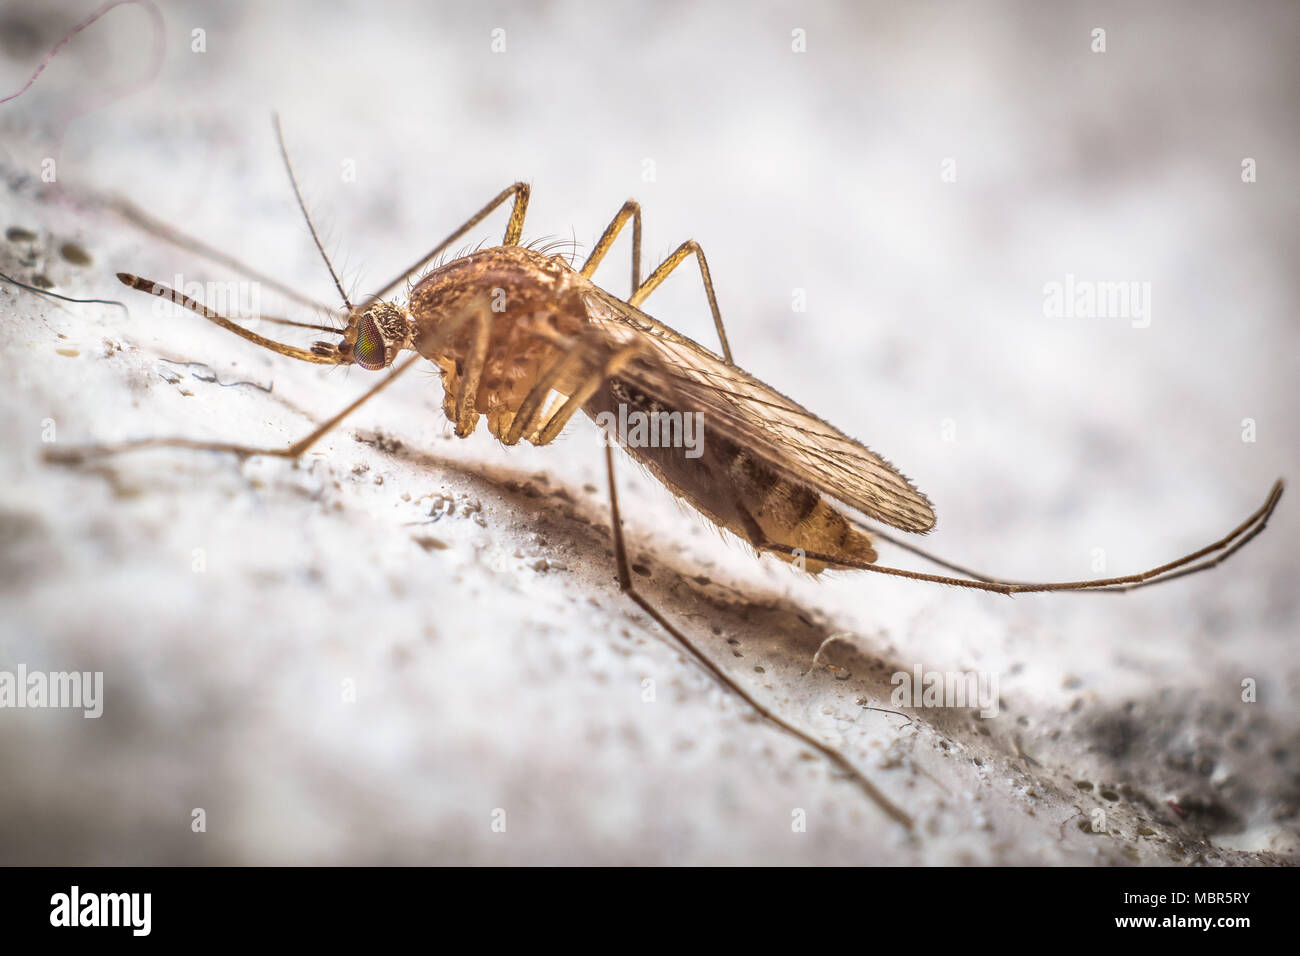 Ritratto di una zanzara sulla parete Foto Stock